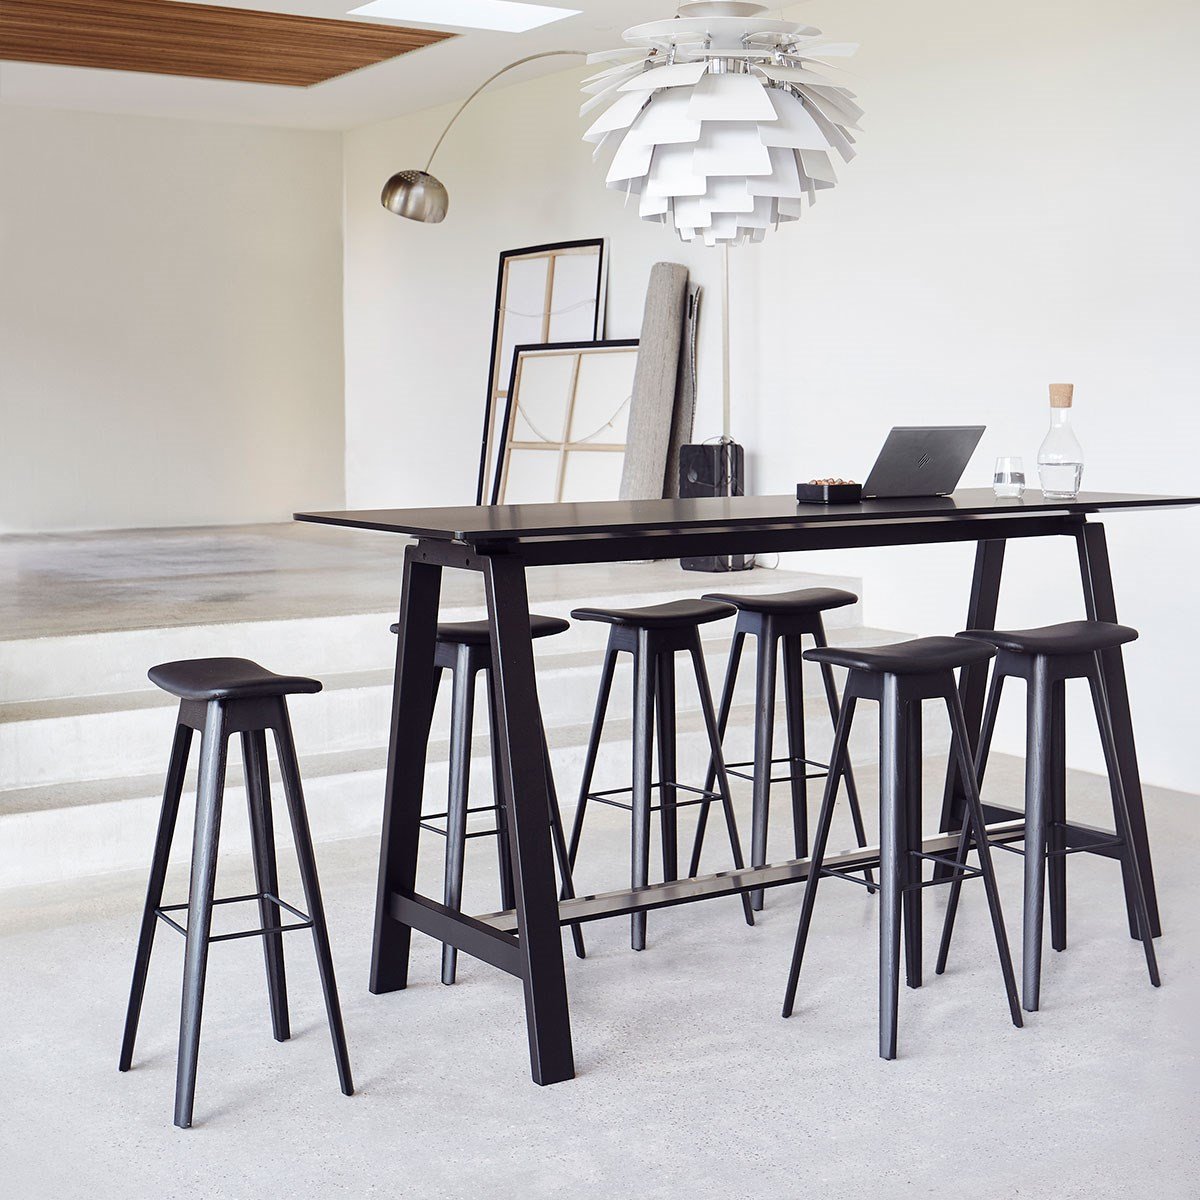 Andersen Furniture Hc1 Barhocker Eiche schwarz, Sitz Leder schwarz, H 80cm